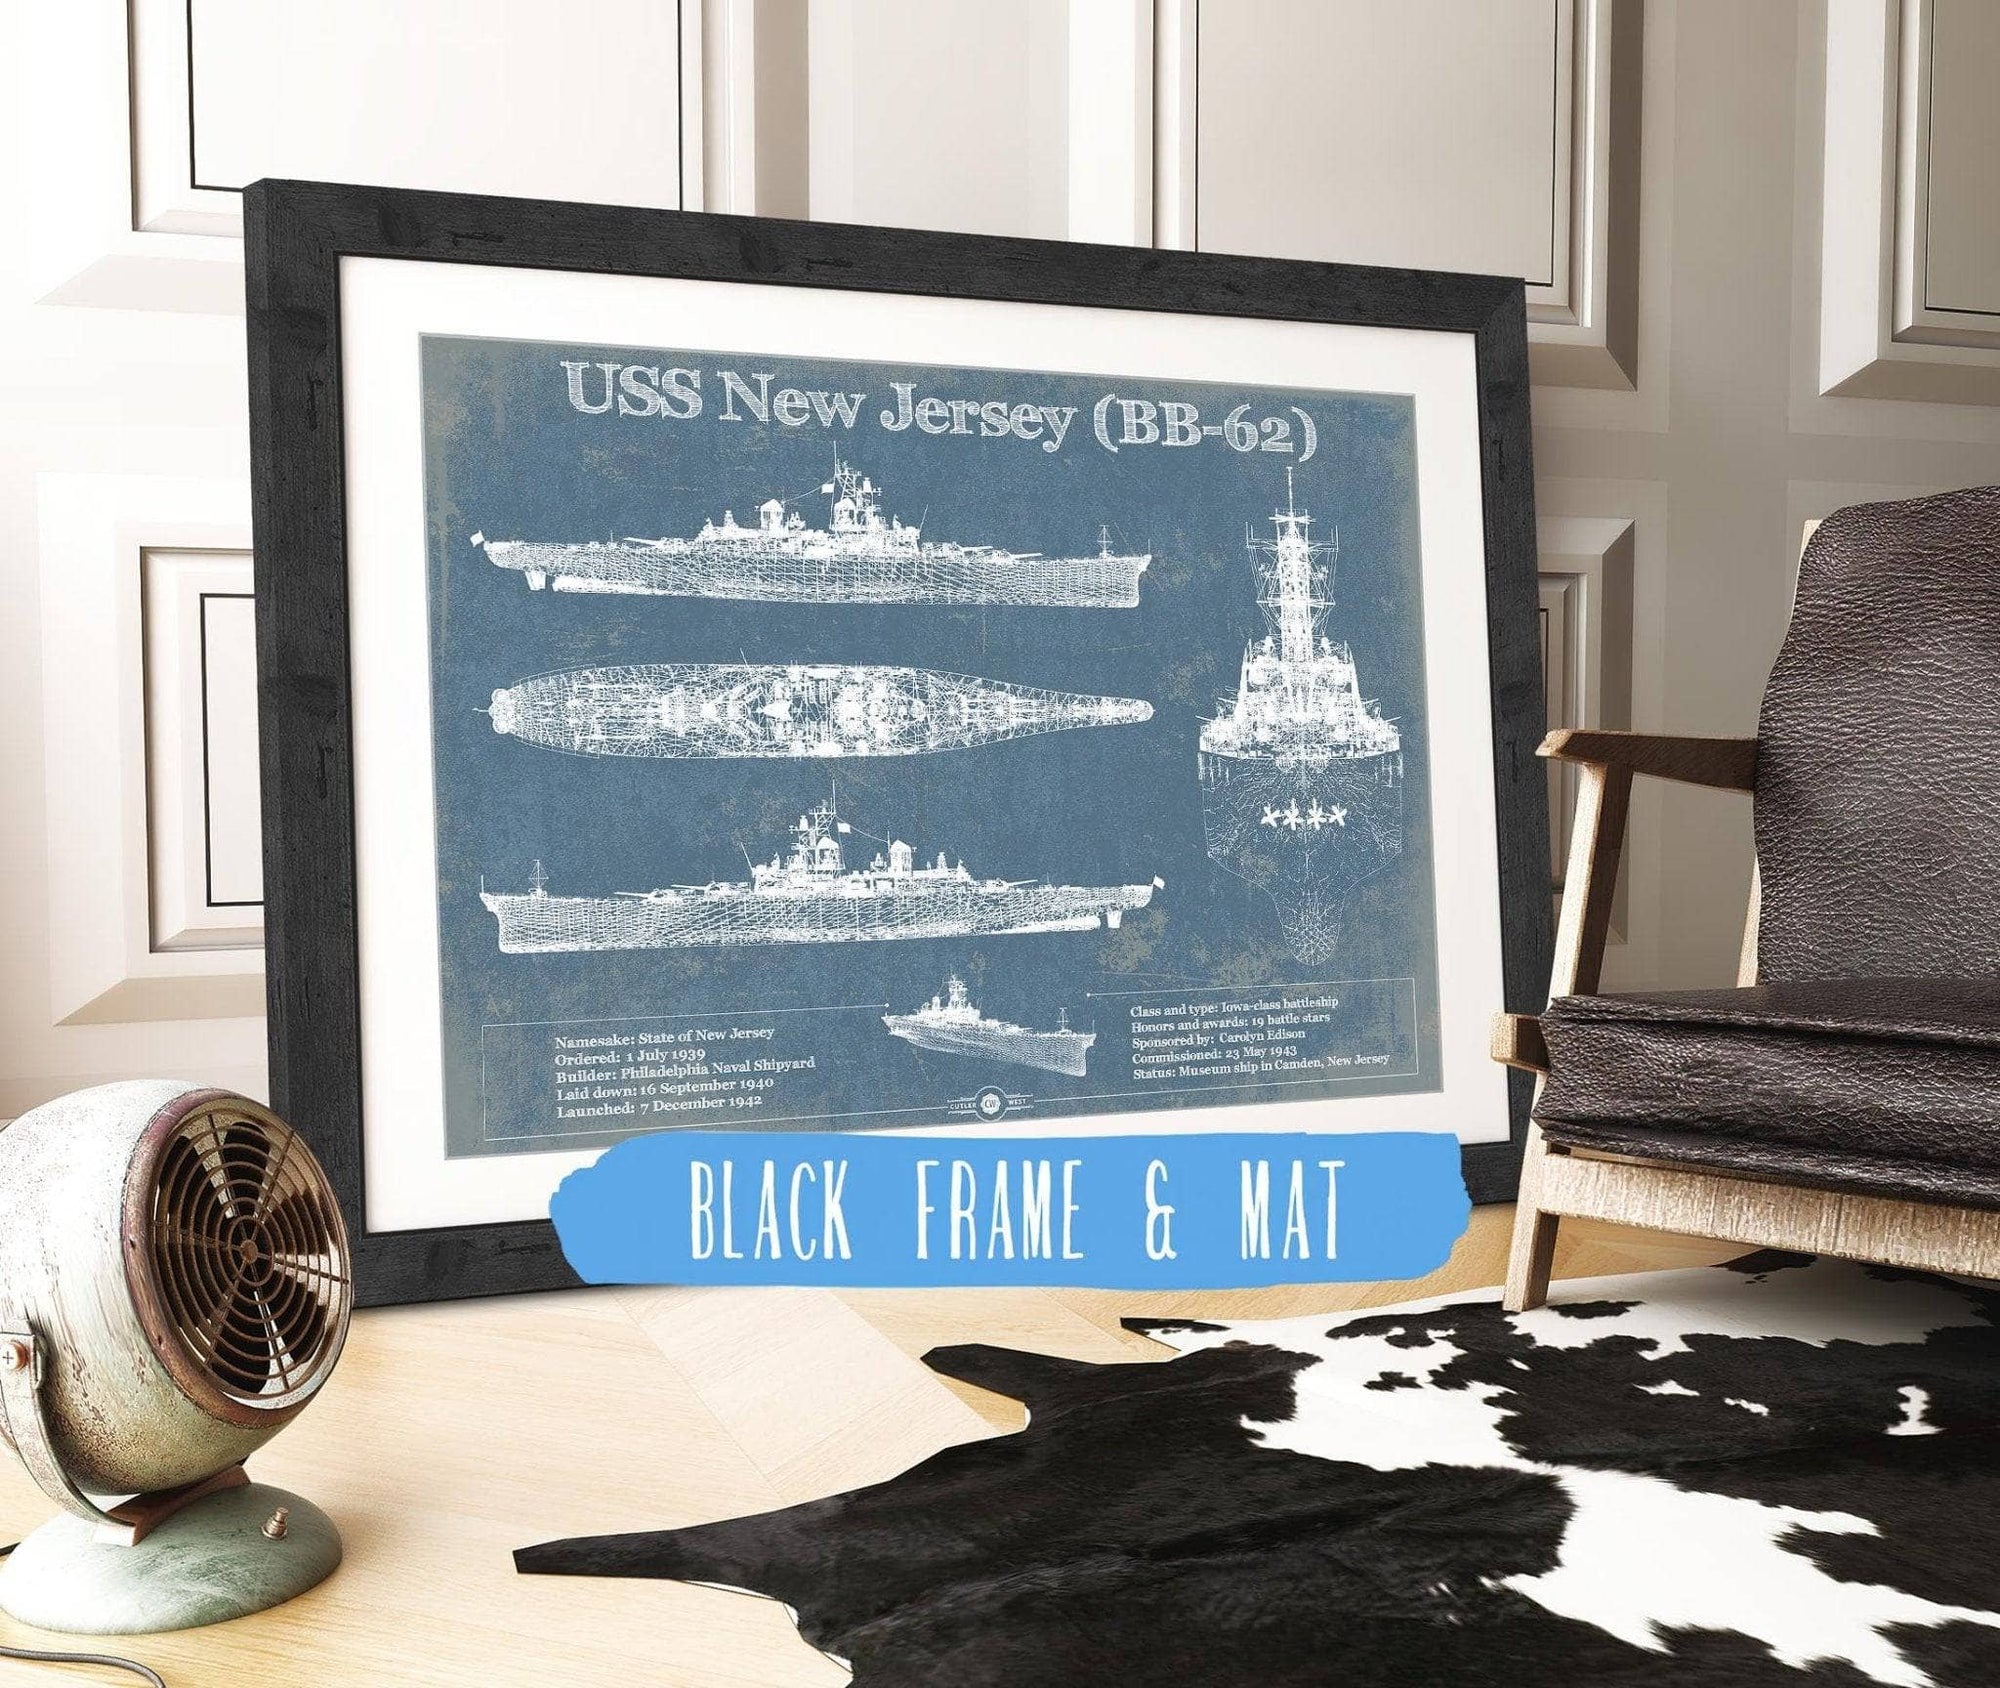 Cutler West Naval Military 14" x 11" / Black Frame & Mat USS New Jersey (BB-62) Battleship Blueprint Original Military Wall Art - Customizable 933350068_24534